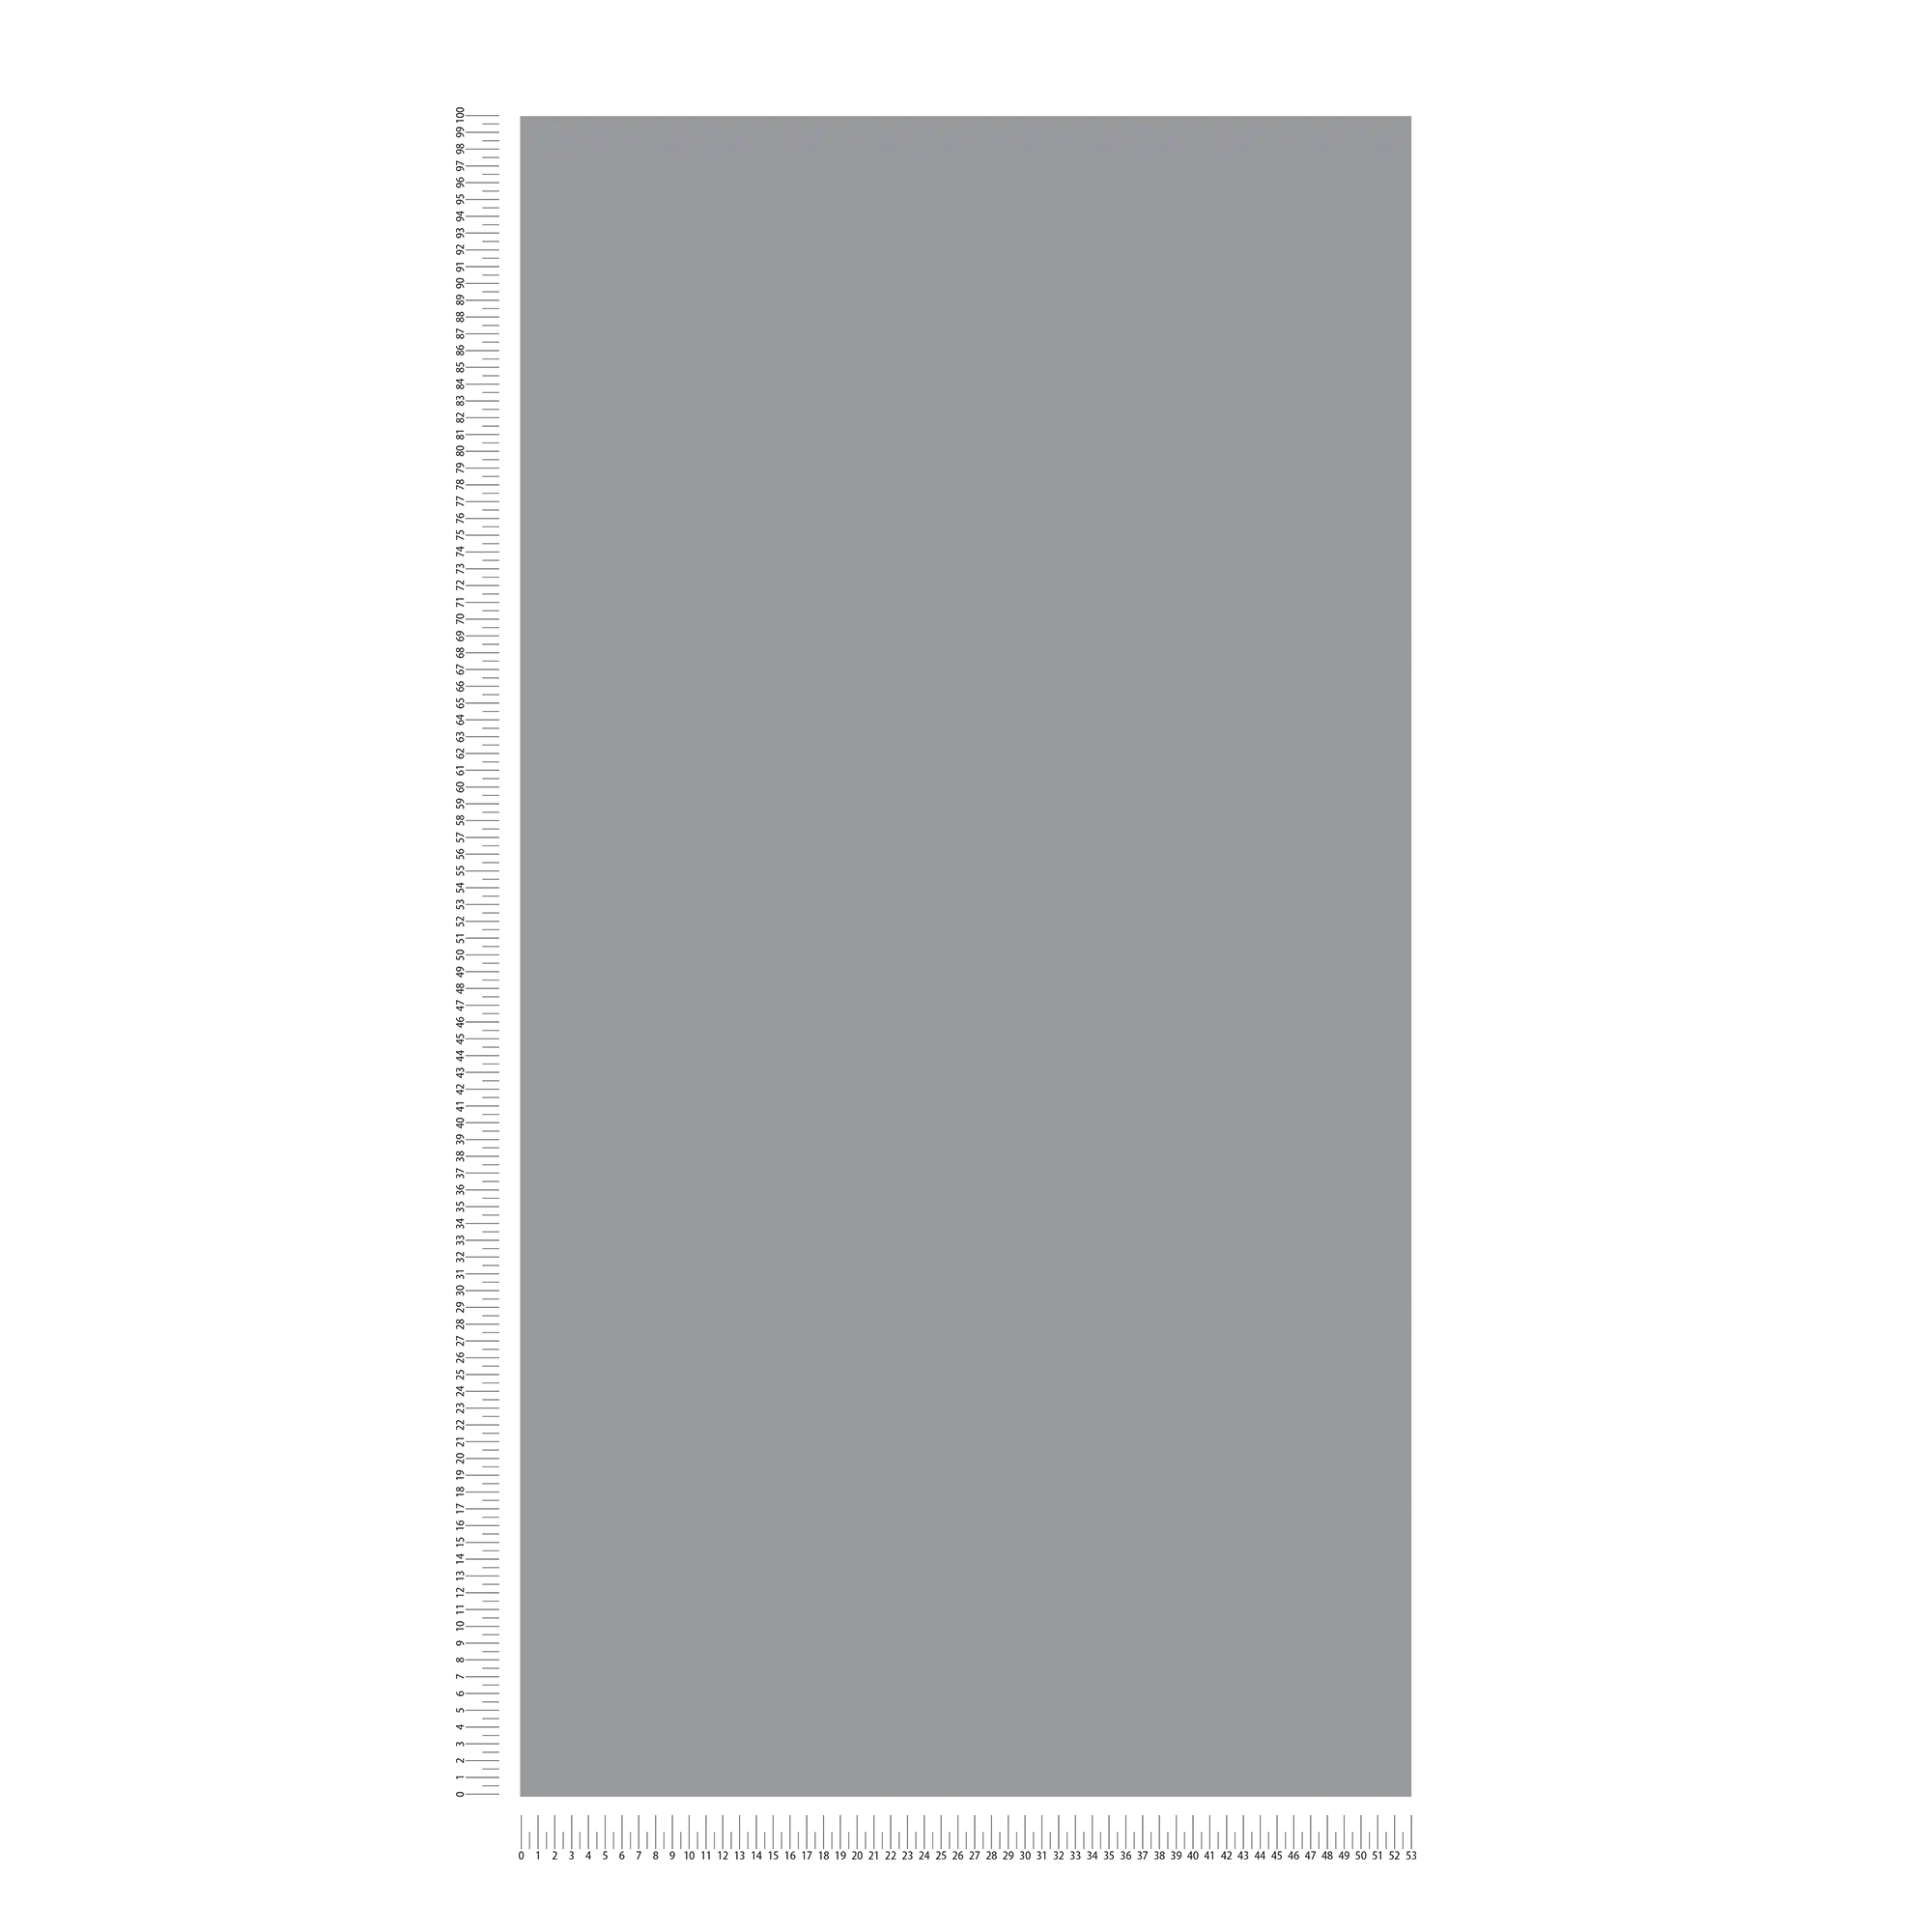             Vliestapete Stahlgrau einfarbig & matt – Grau
        